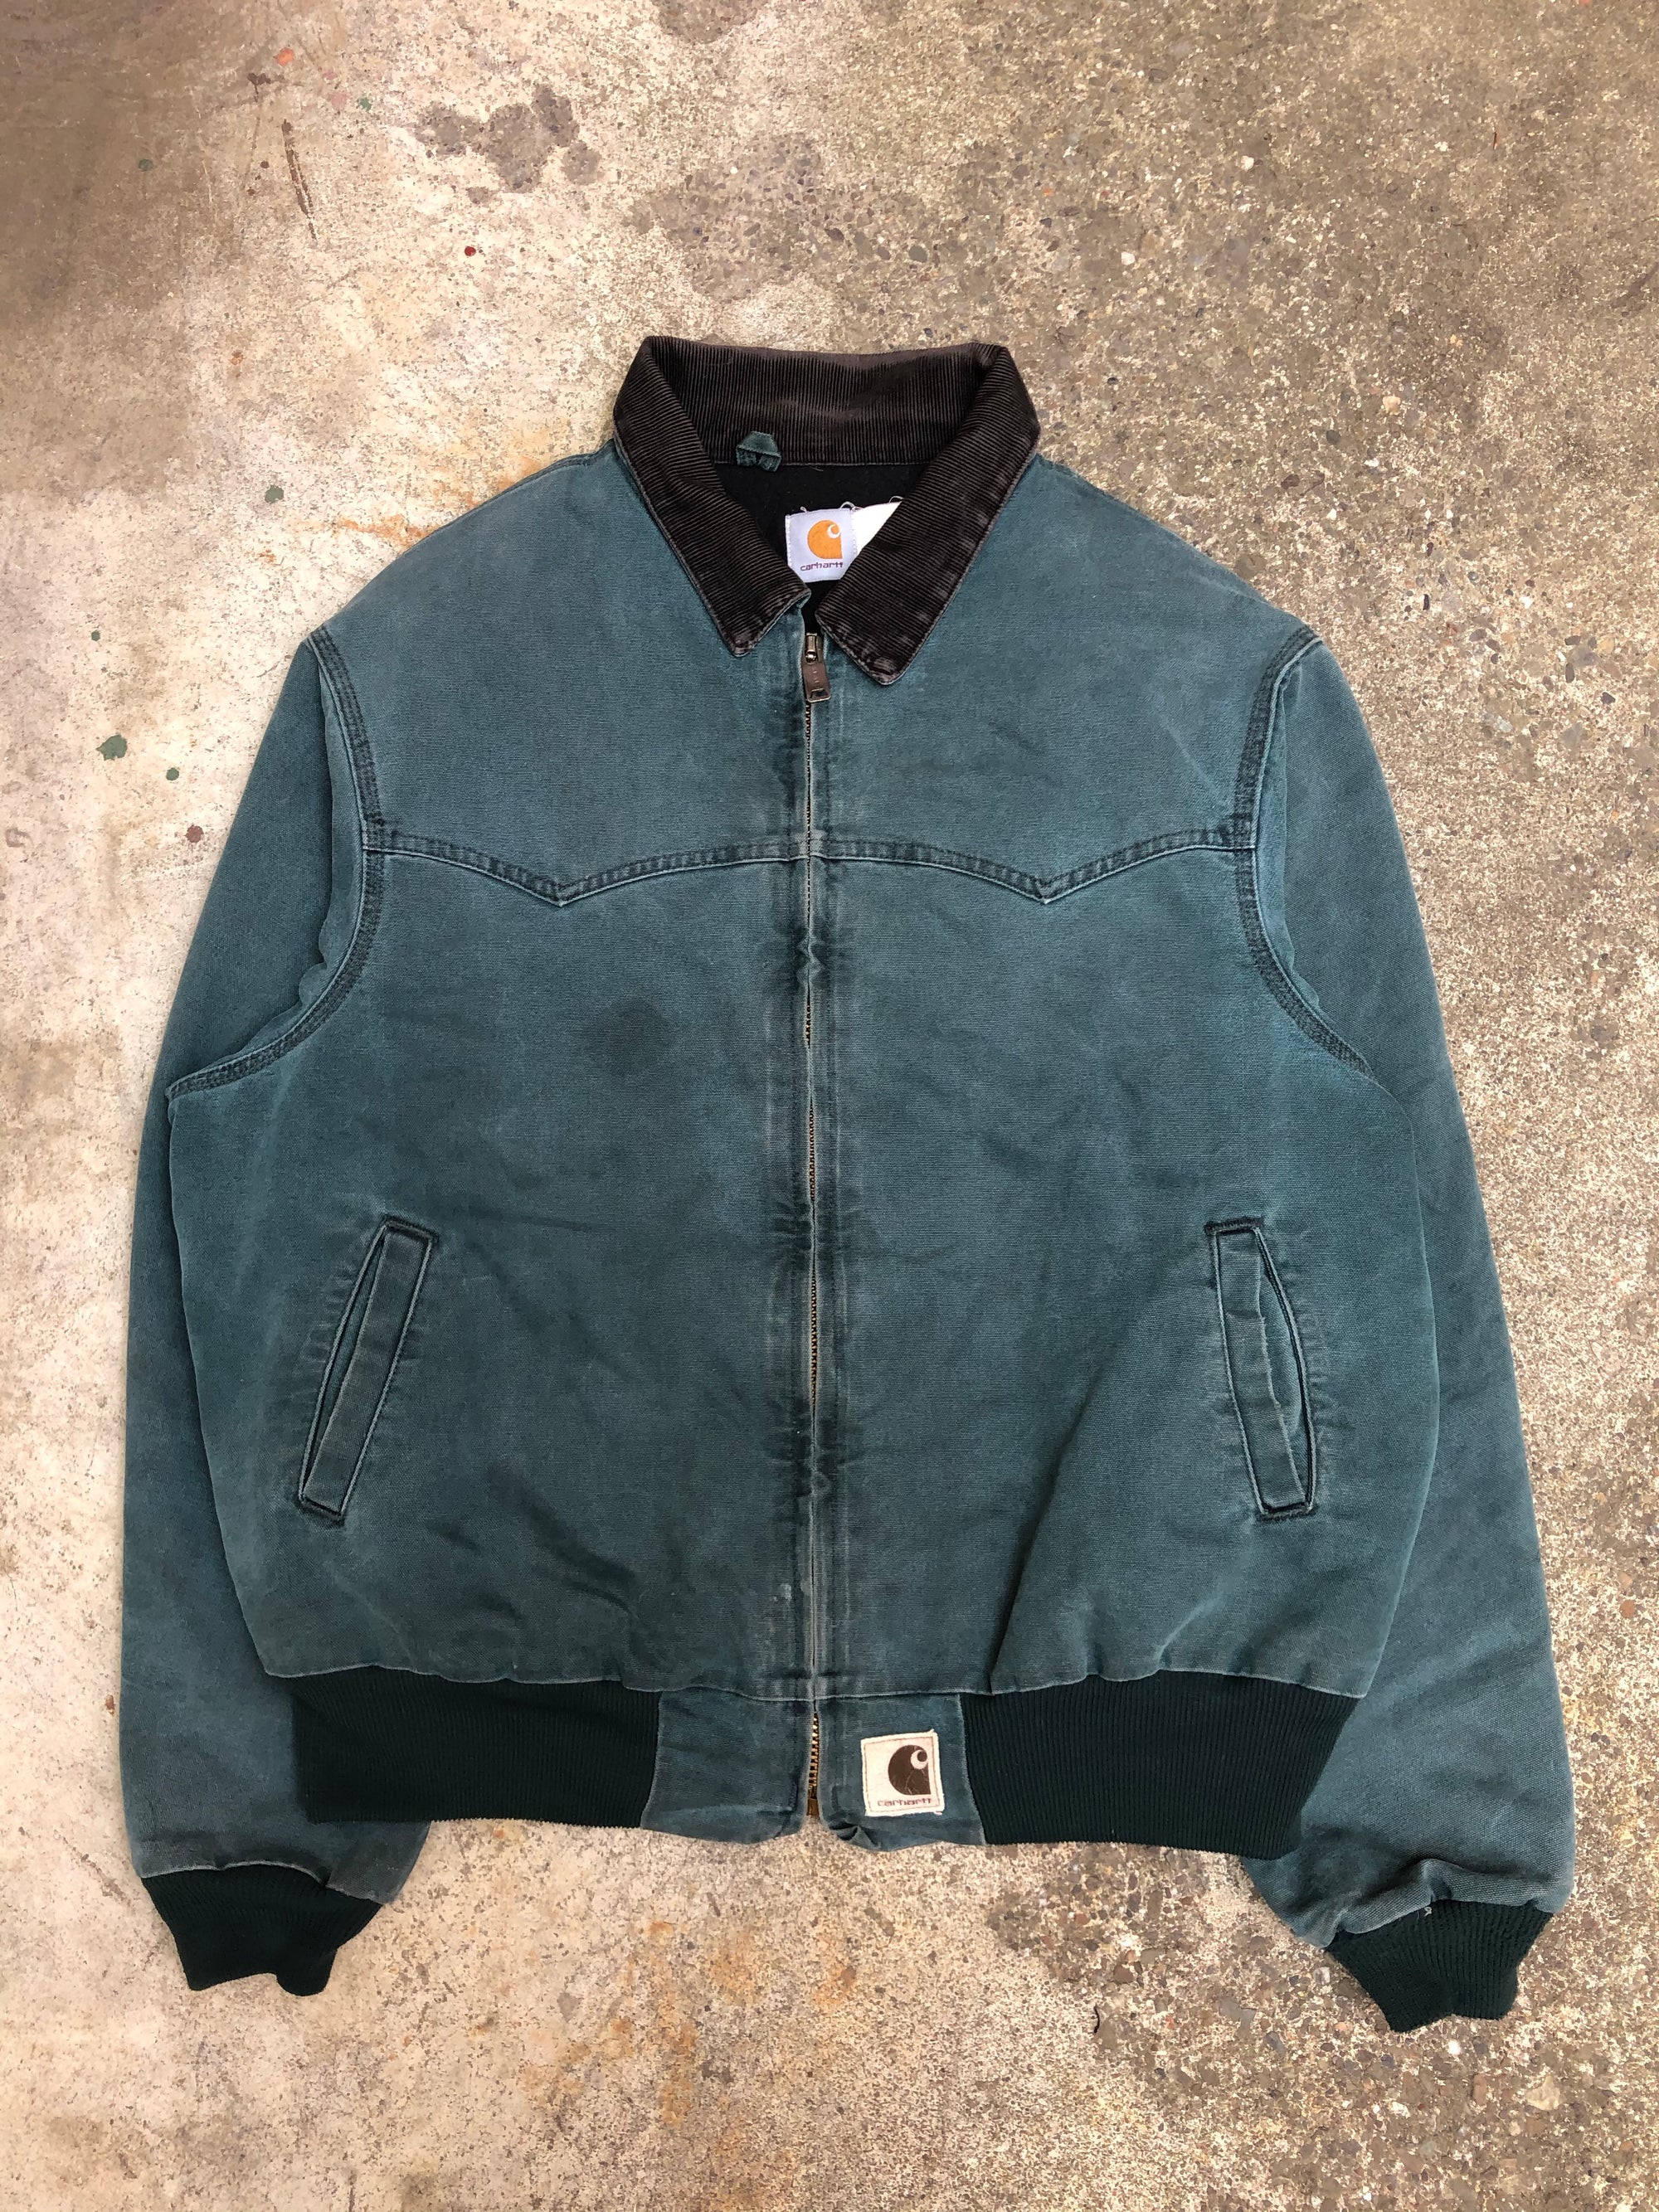 1990s Carhartt Faded Teal Santa Fe Work Jacket (XL)